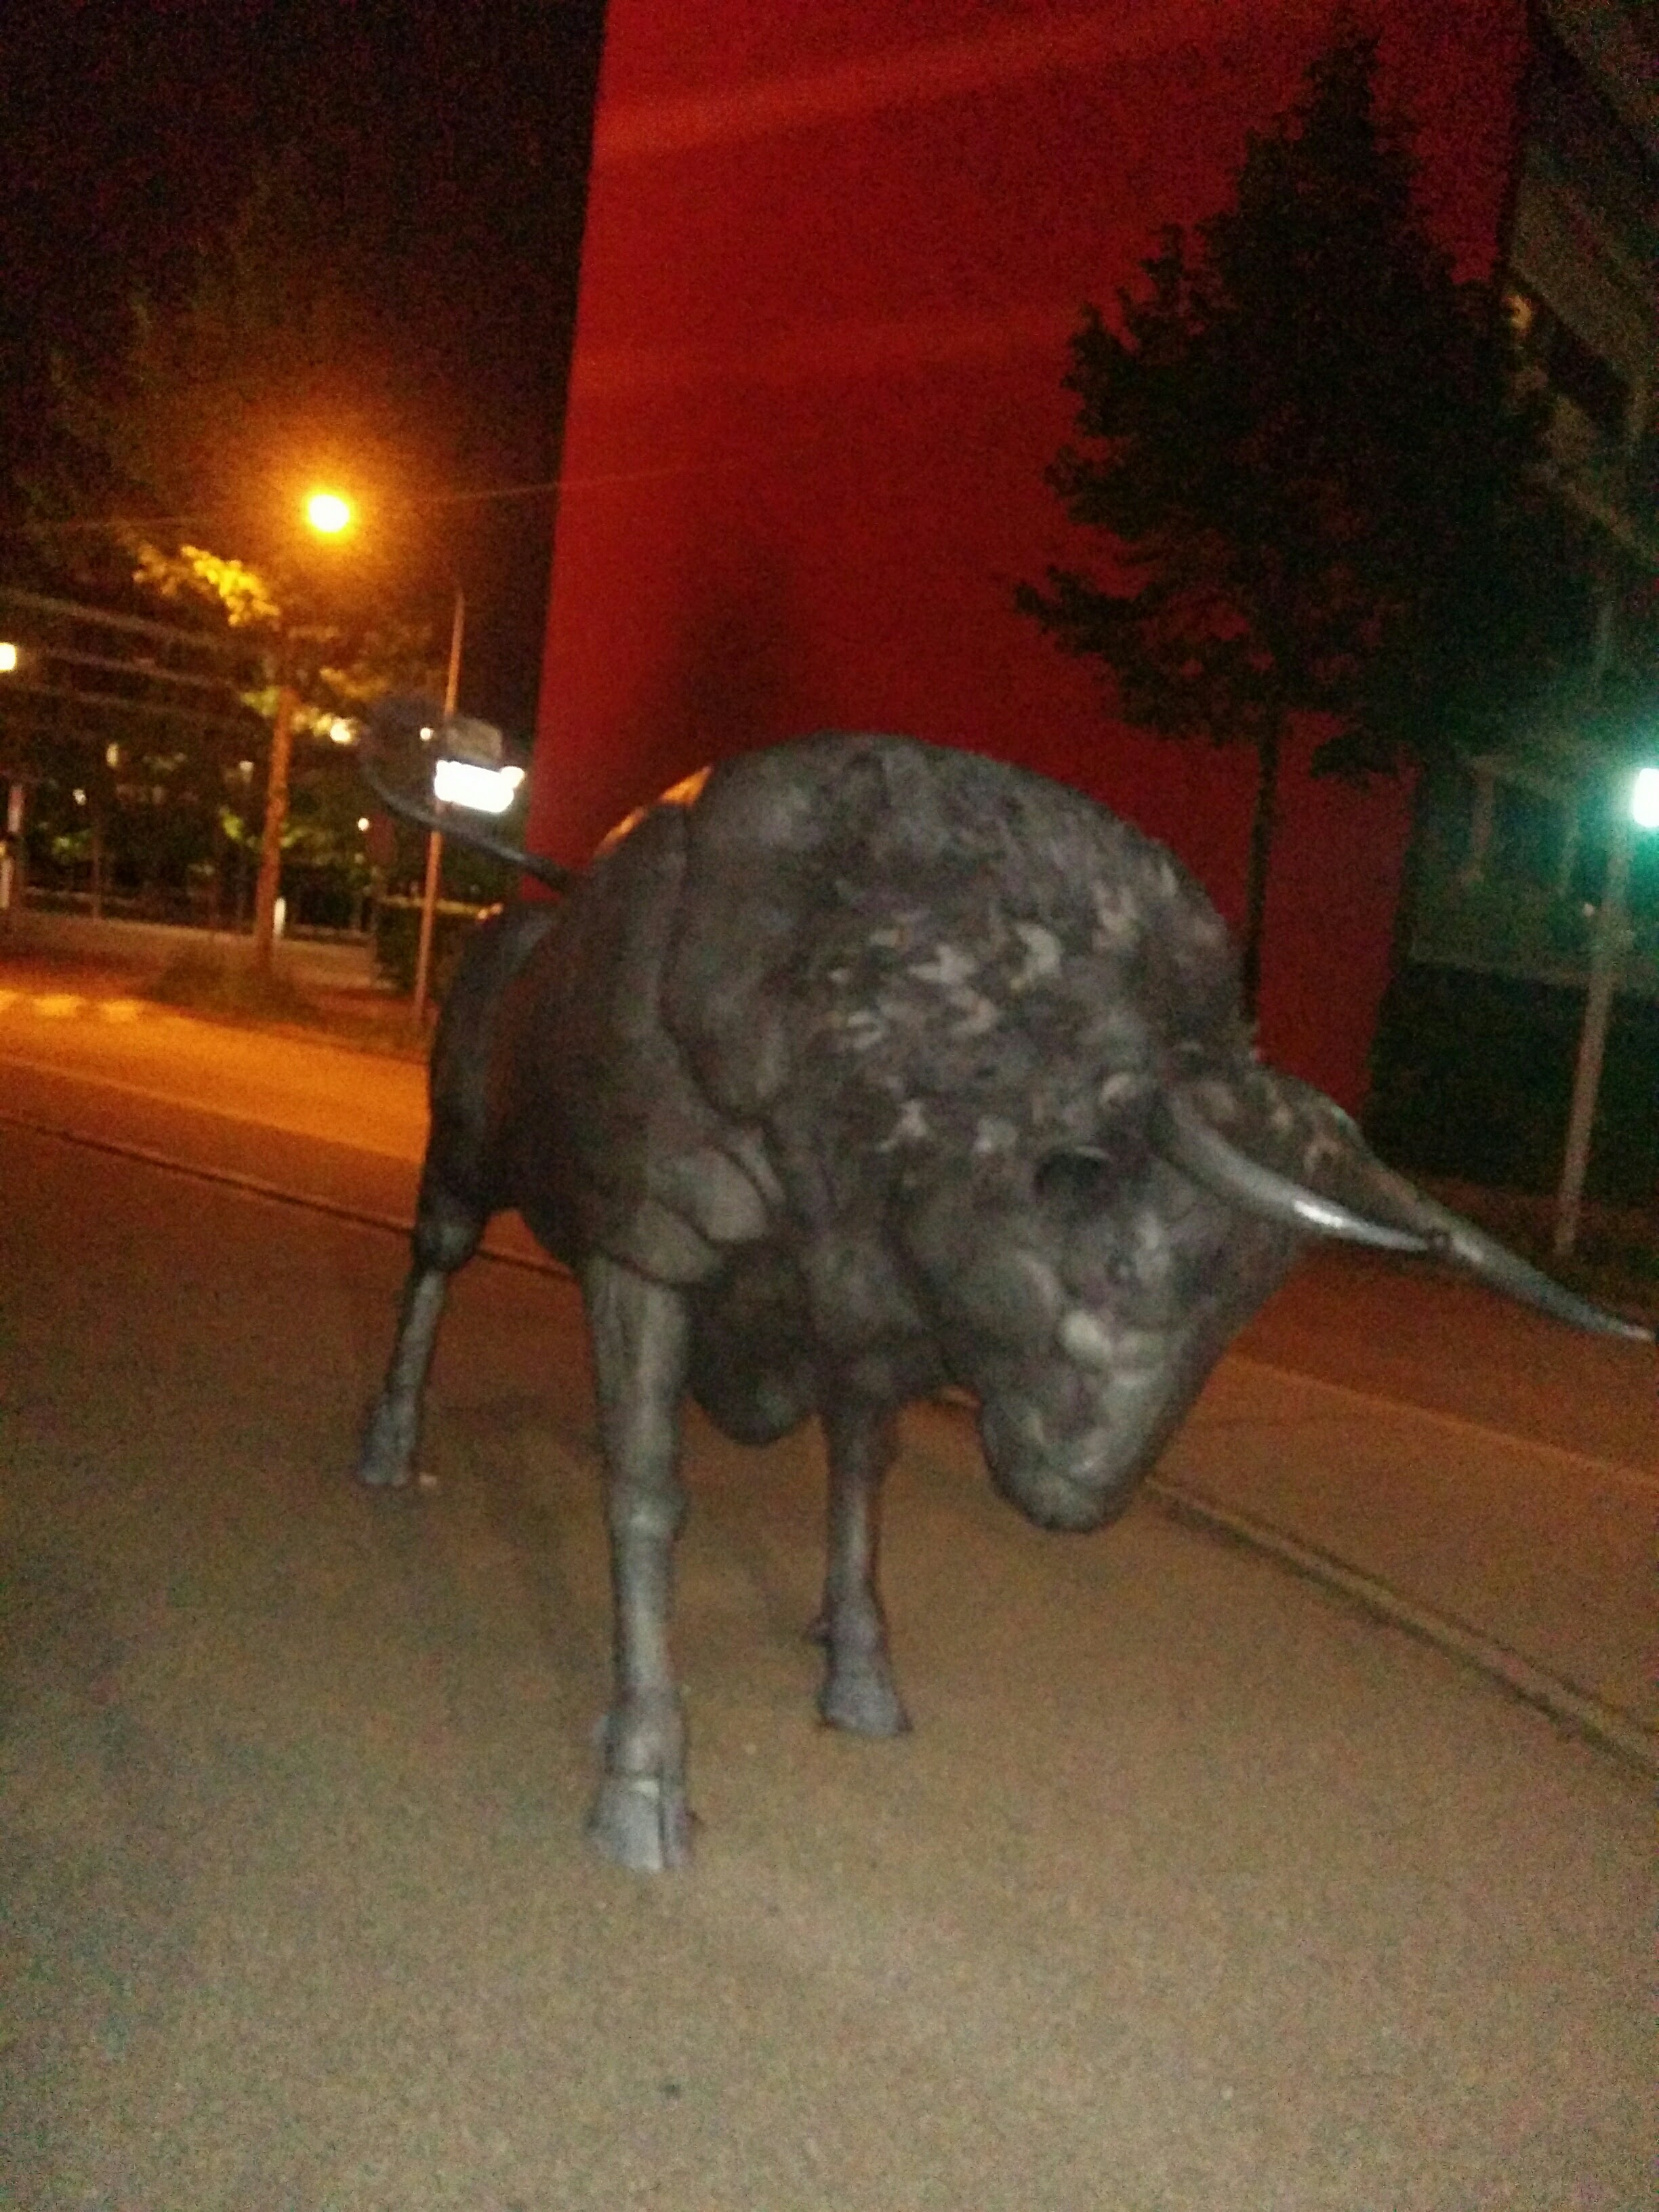 We found The Bull of Zurich